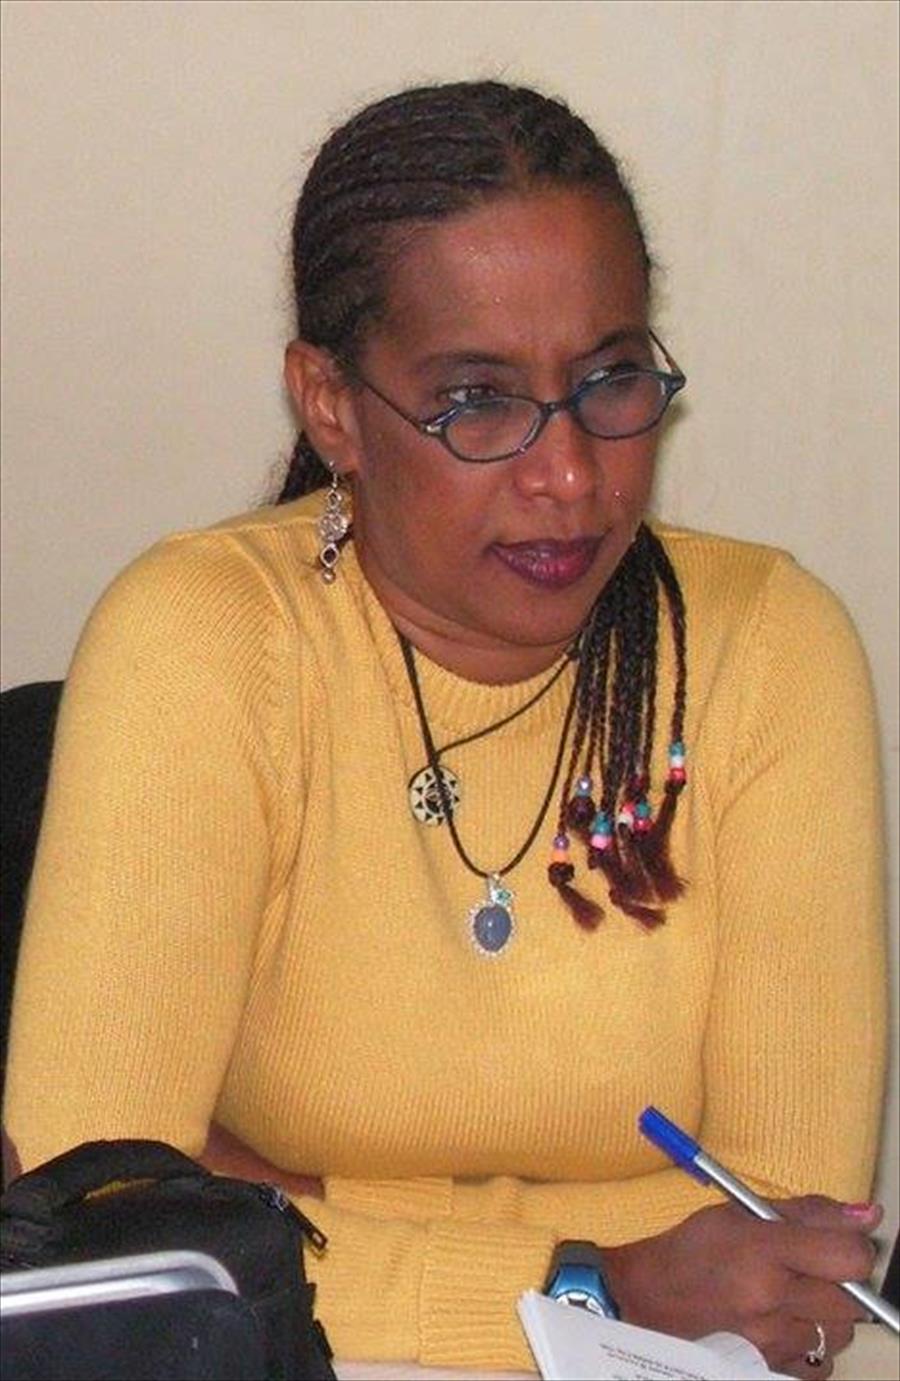 ممثلة اليونسكو لـ«بوابة الوسط»: اتساع دائرة قبول ميثاق الشرف الإعلامي بليبيا